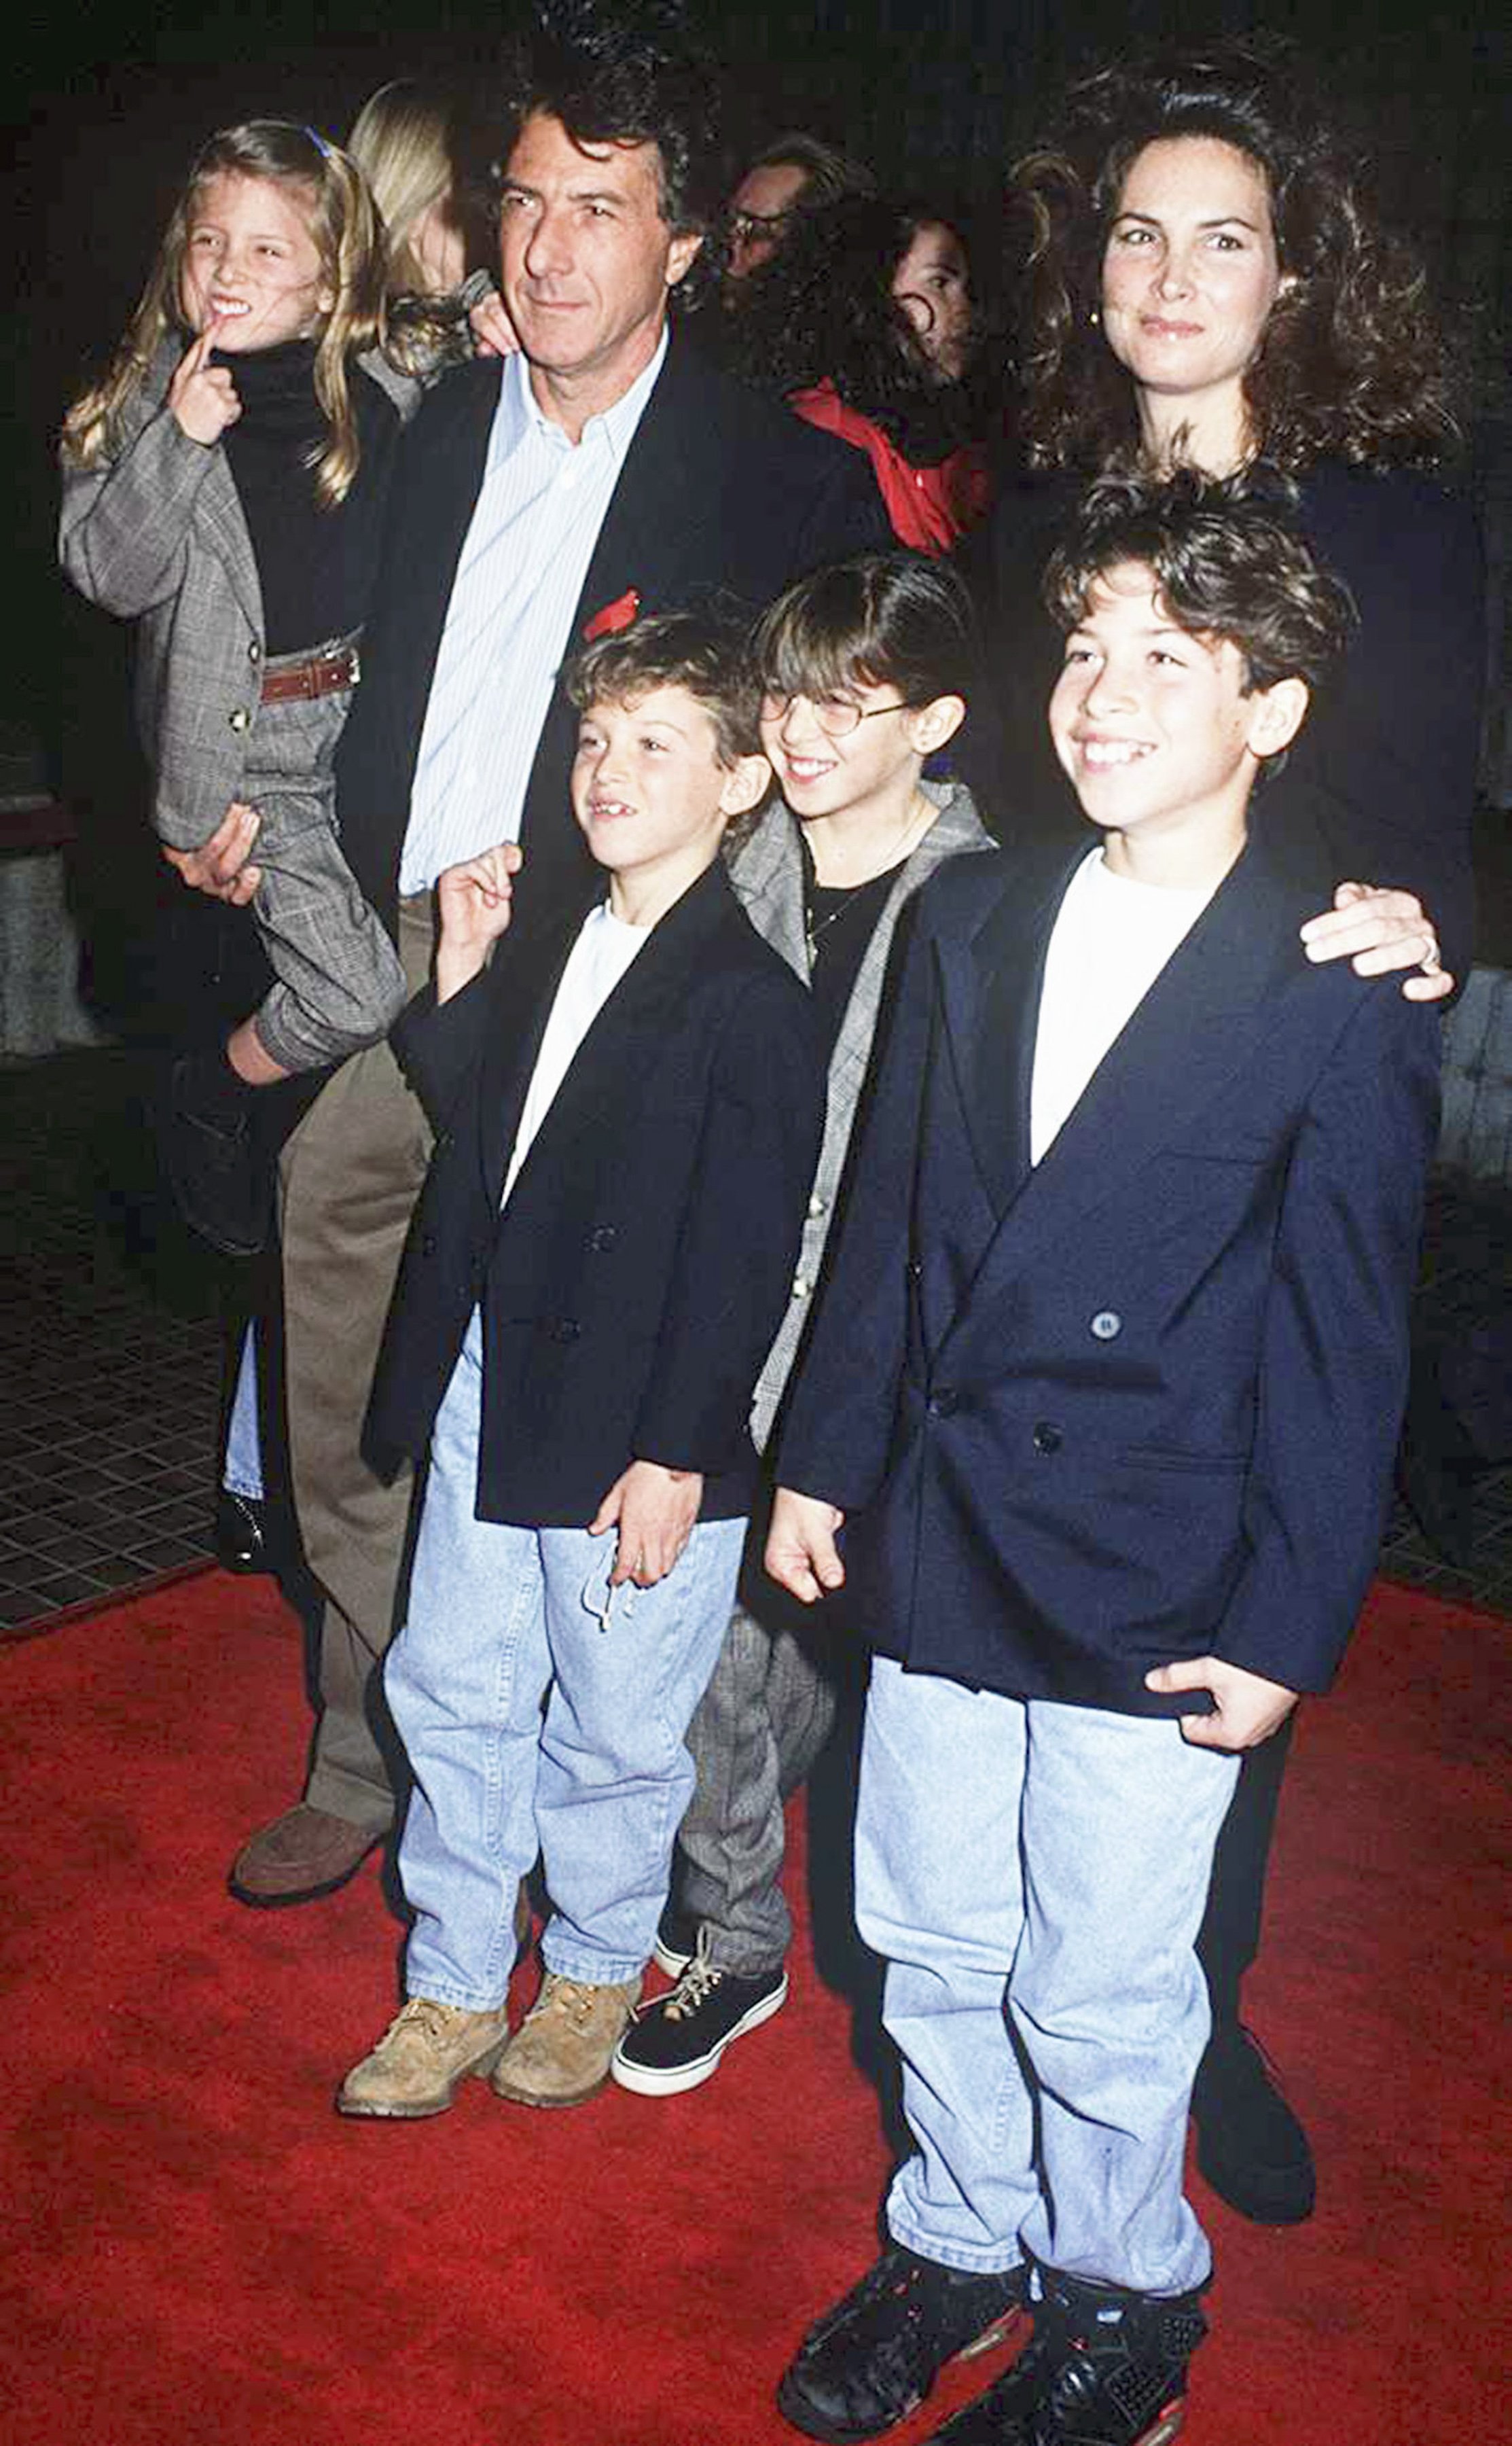 Dustin Hoffman con su esposa, la empresaria estadounidense Lisa Hoffman y sus hijos Jake Hoffman, Rebecca Hoffman, Max Hoffman y Alexandra Hoffman en un evento de alfombra roja en 1991 | Foto: Getty Images